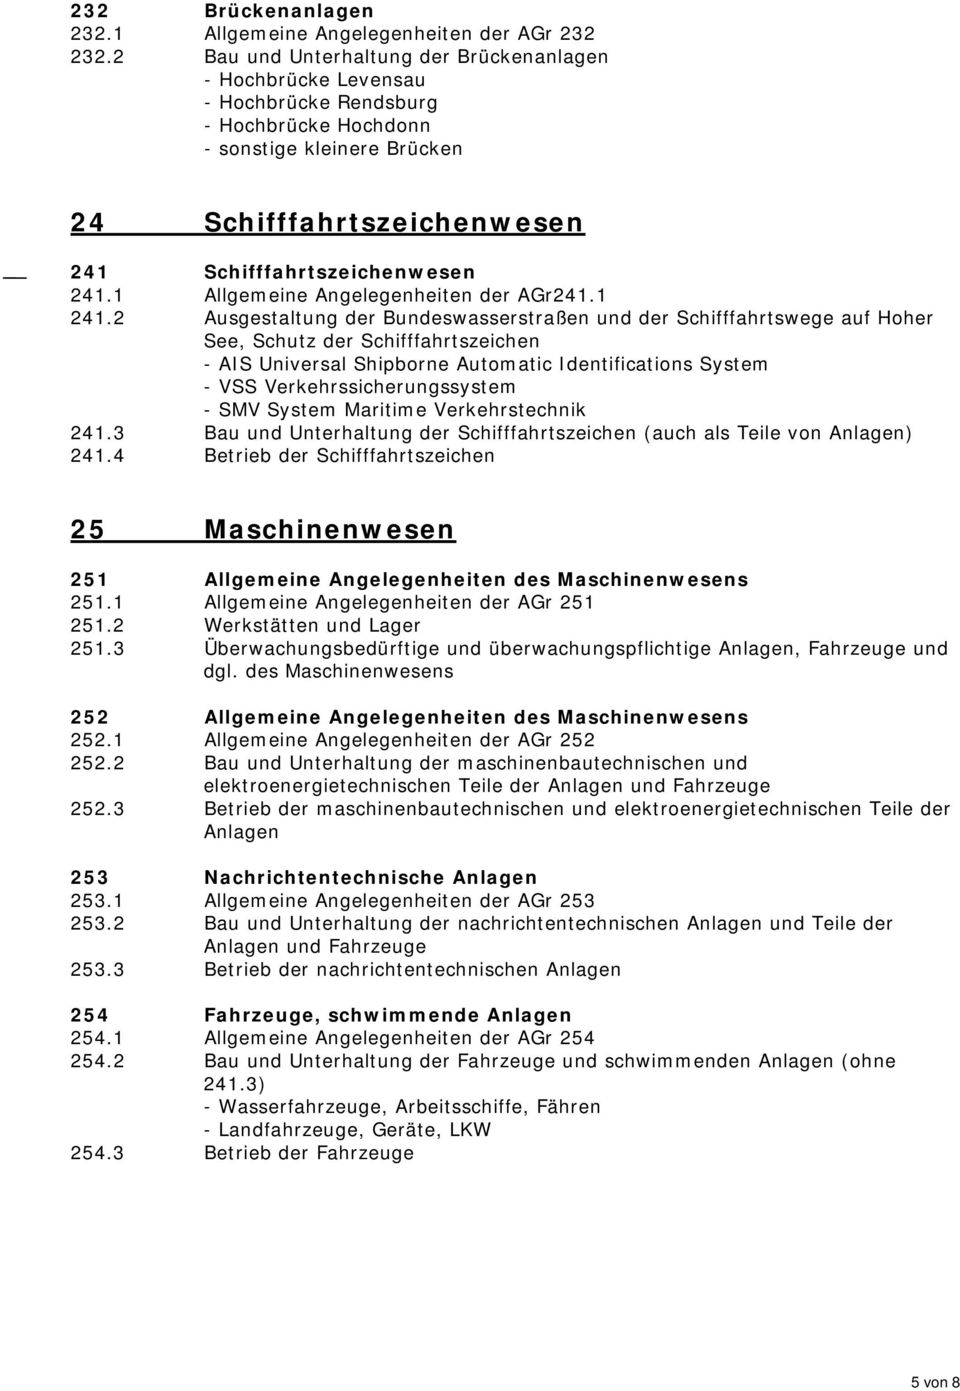 1 Allgemeine Angelegenheiten der AGr241.1 241.